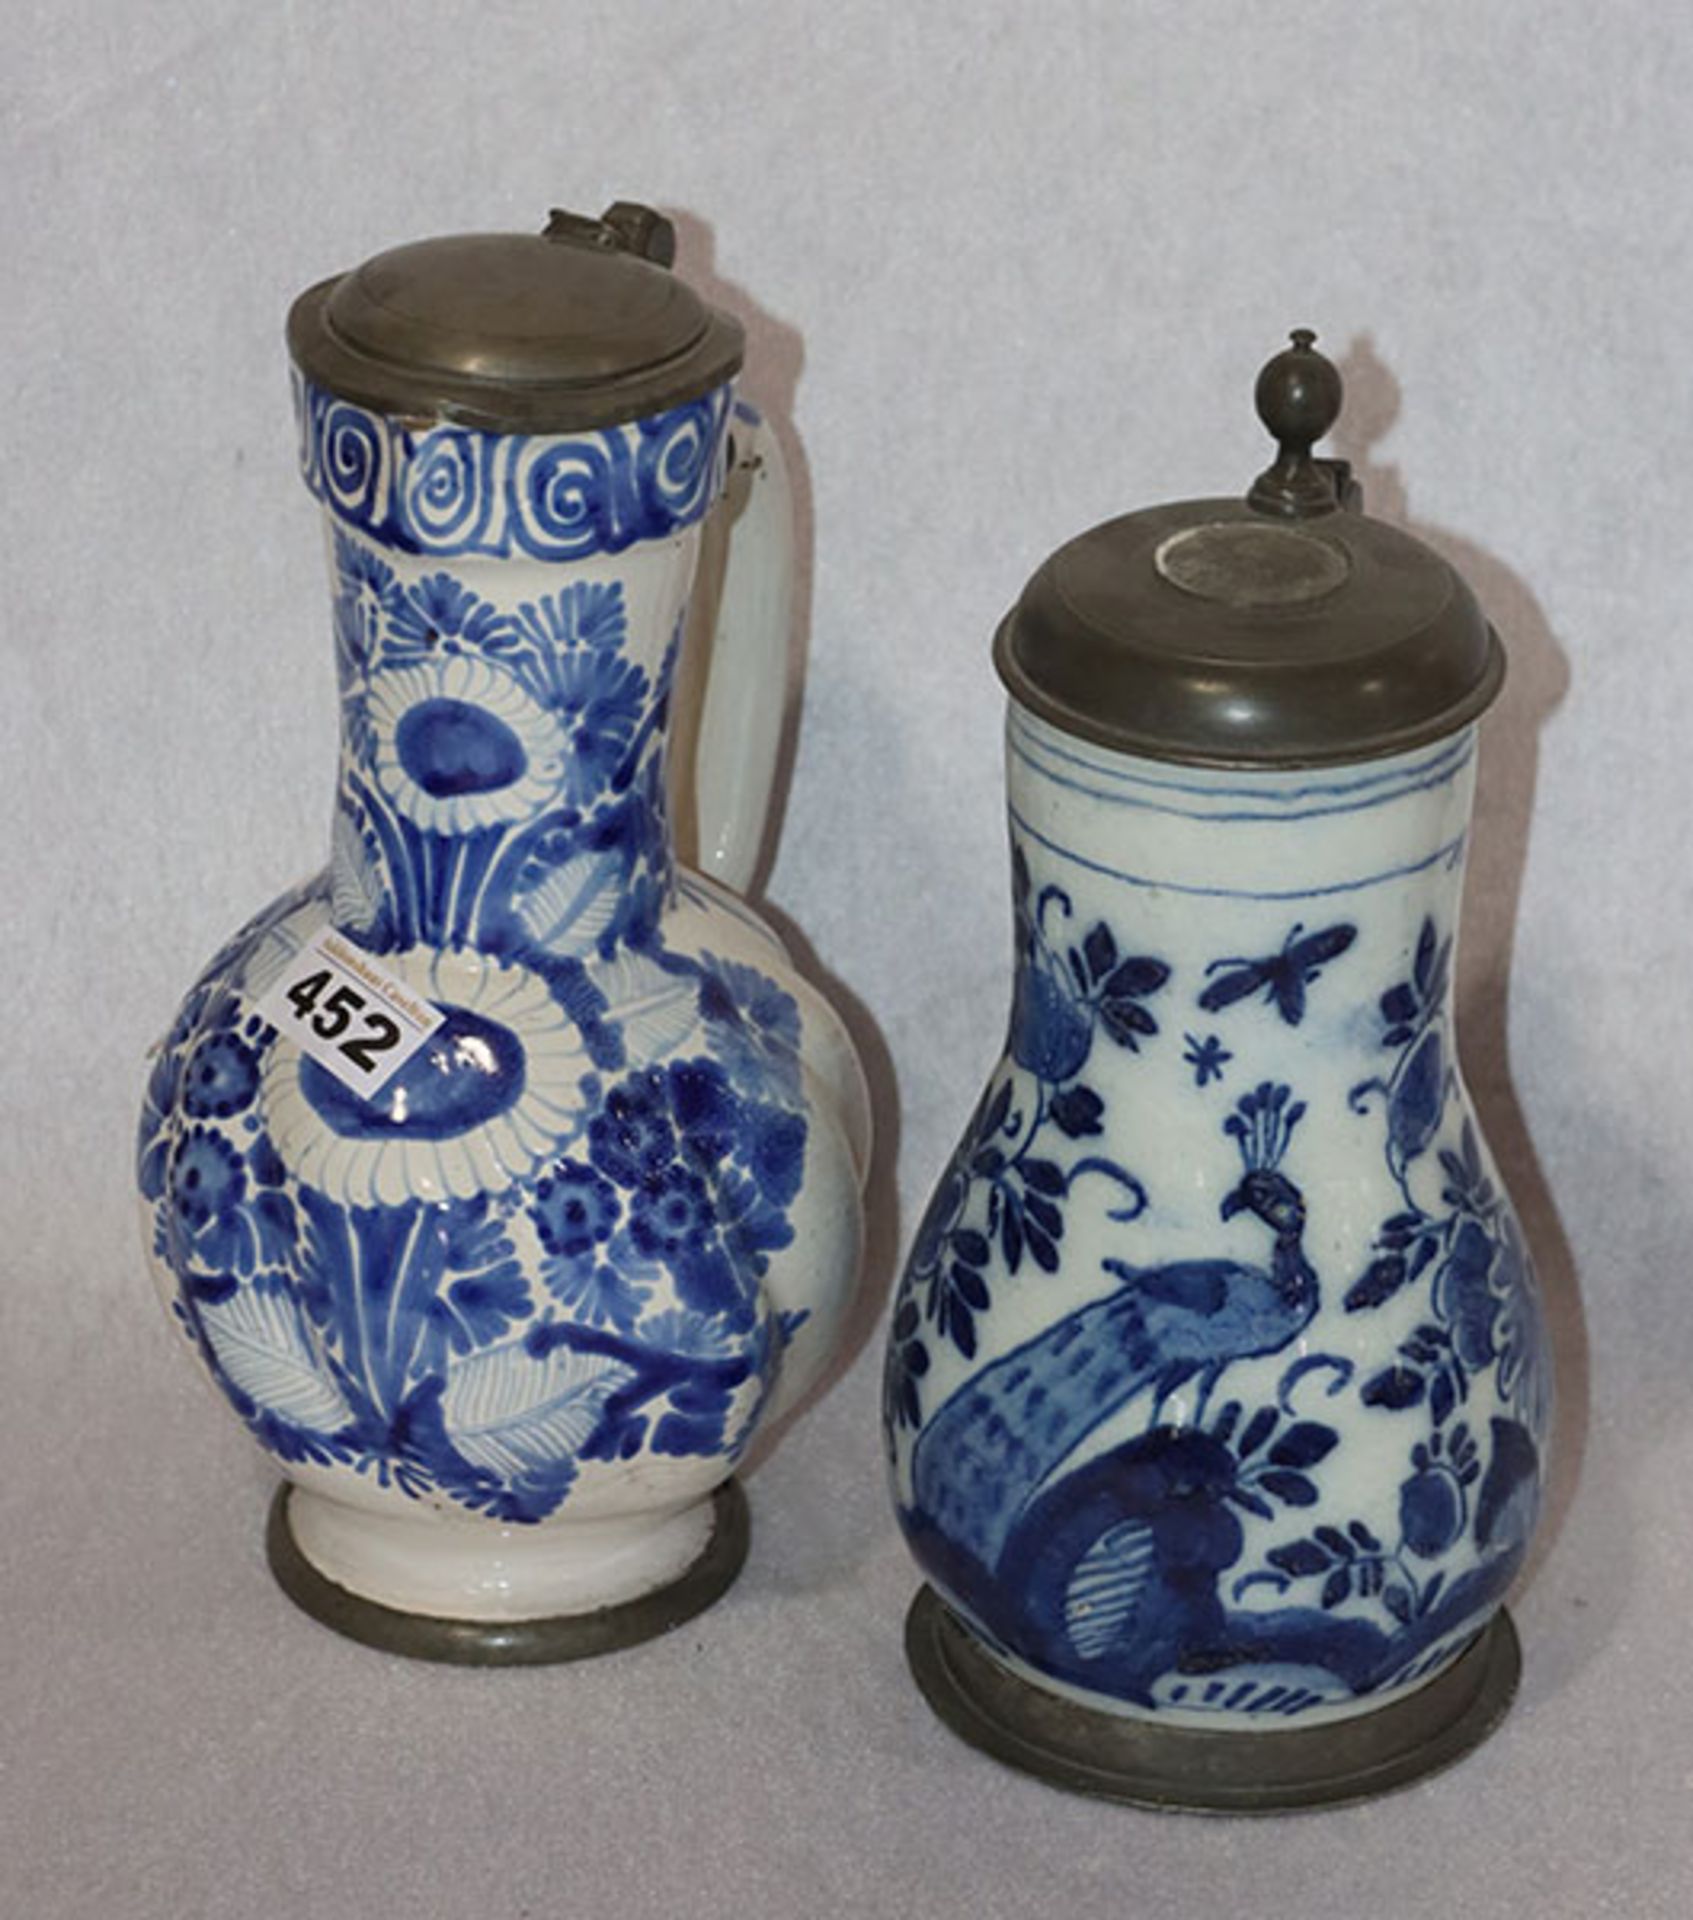 2 Keramik Henkelkrüge mit blauem Dekor, Zinn-Fuß und Deckel, H 26/27 cm, beschädigt und teils